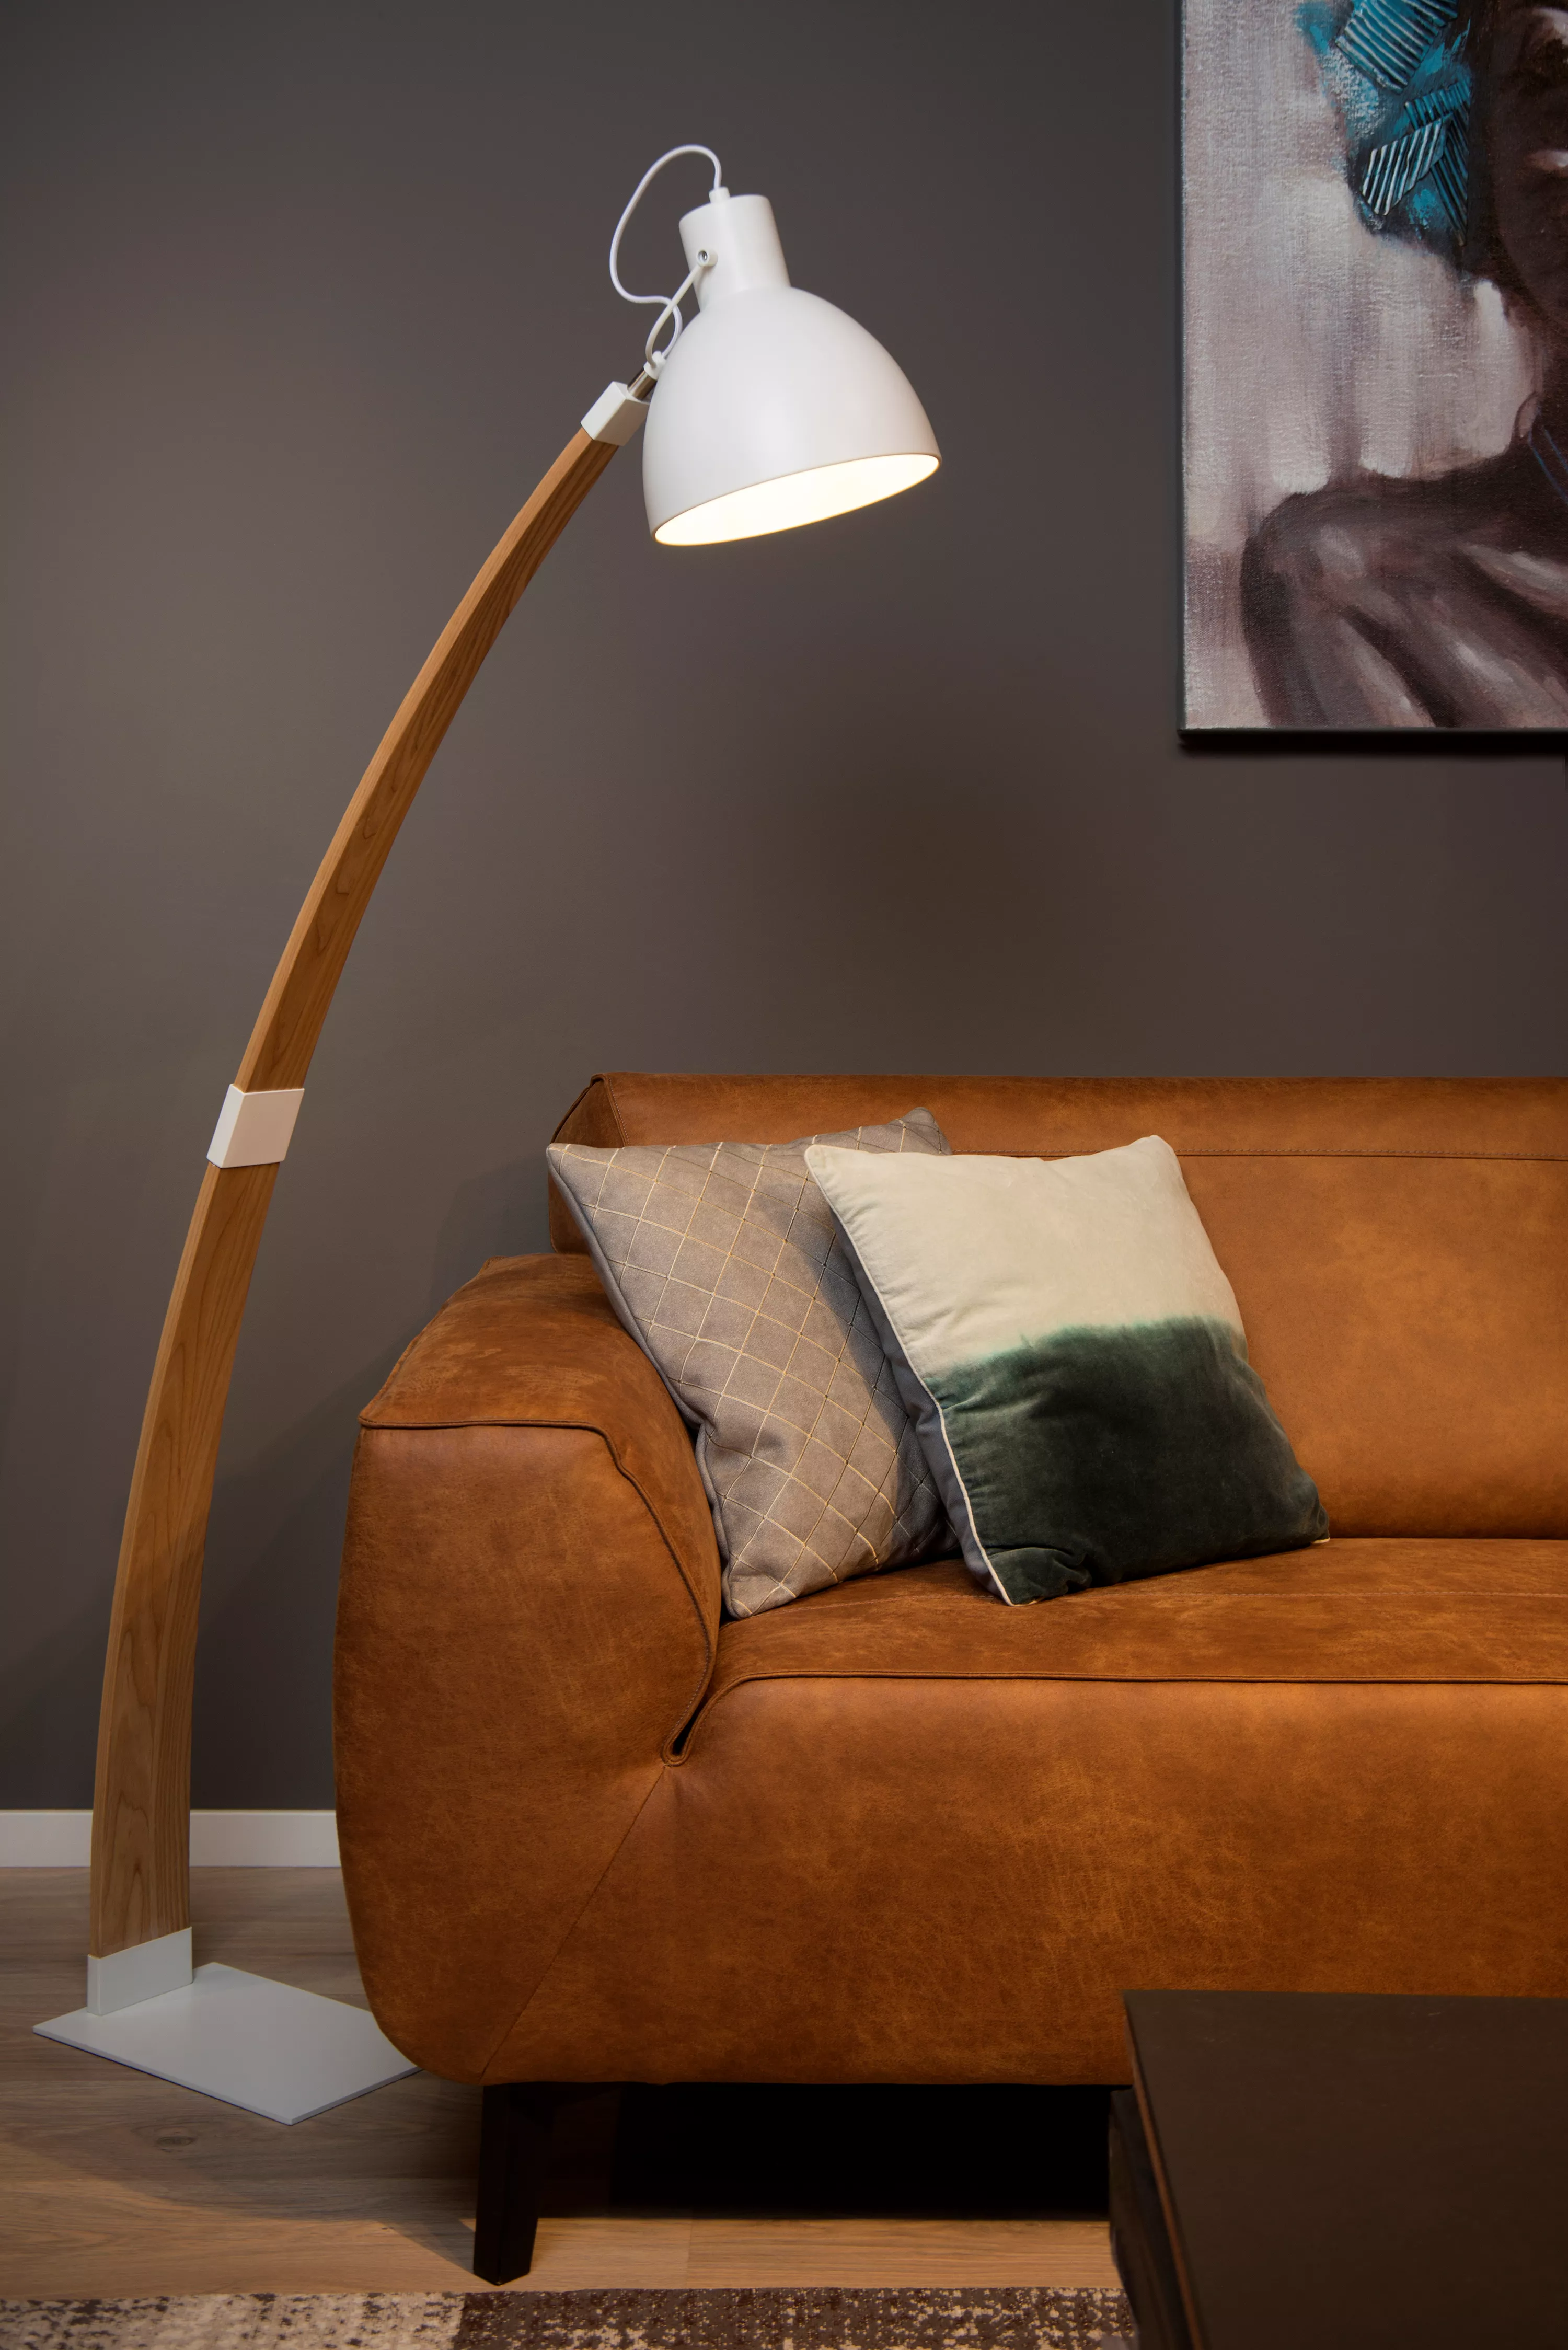 Stojací lampa Curf v kombinaci dřeva a bílé barvy se hodí do minimalistického interiéru, snadno směrovatelná kam potřebujete.